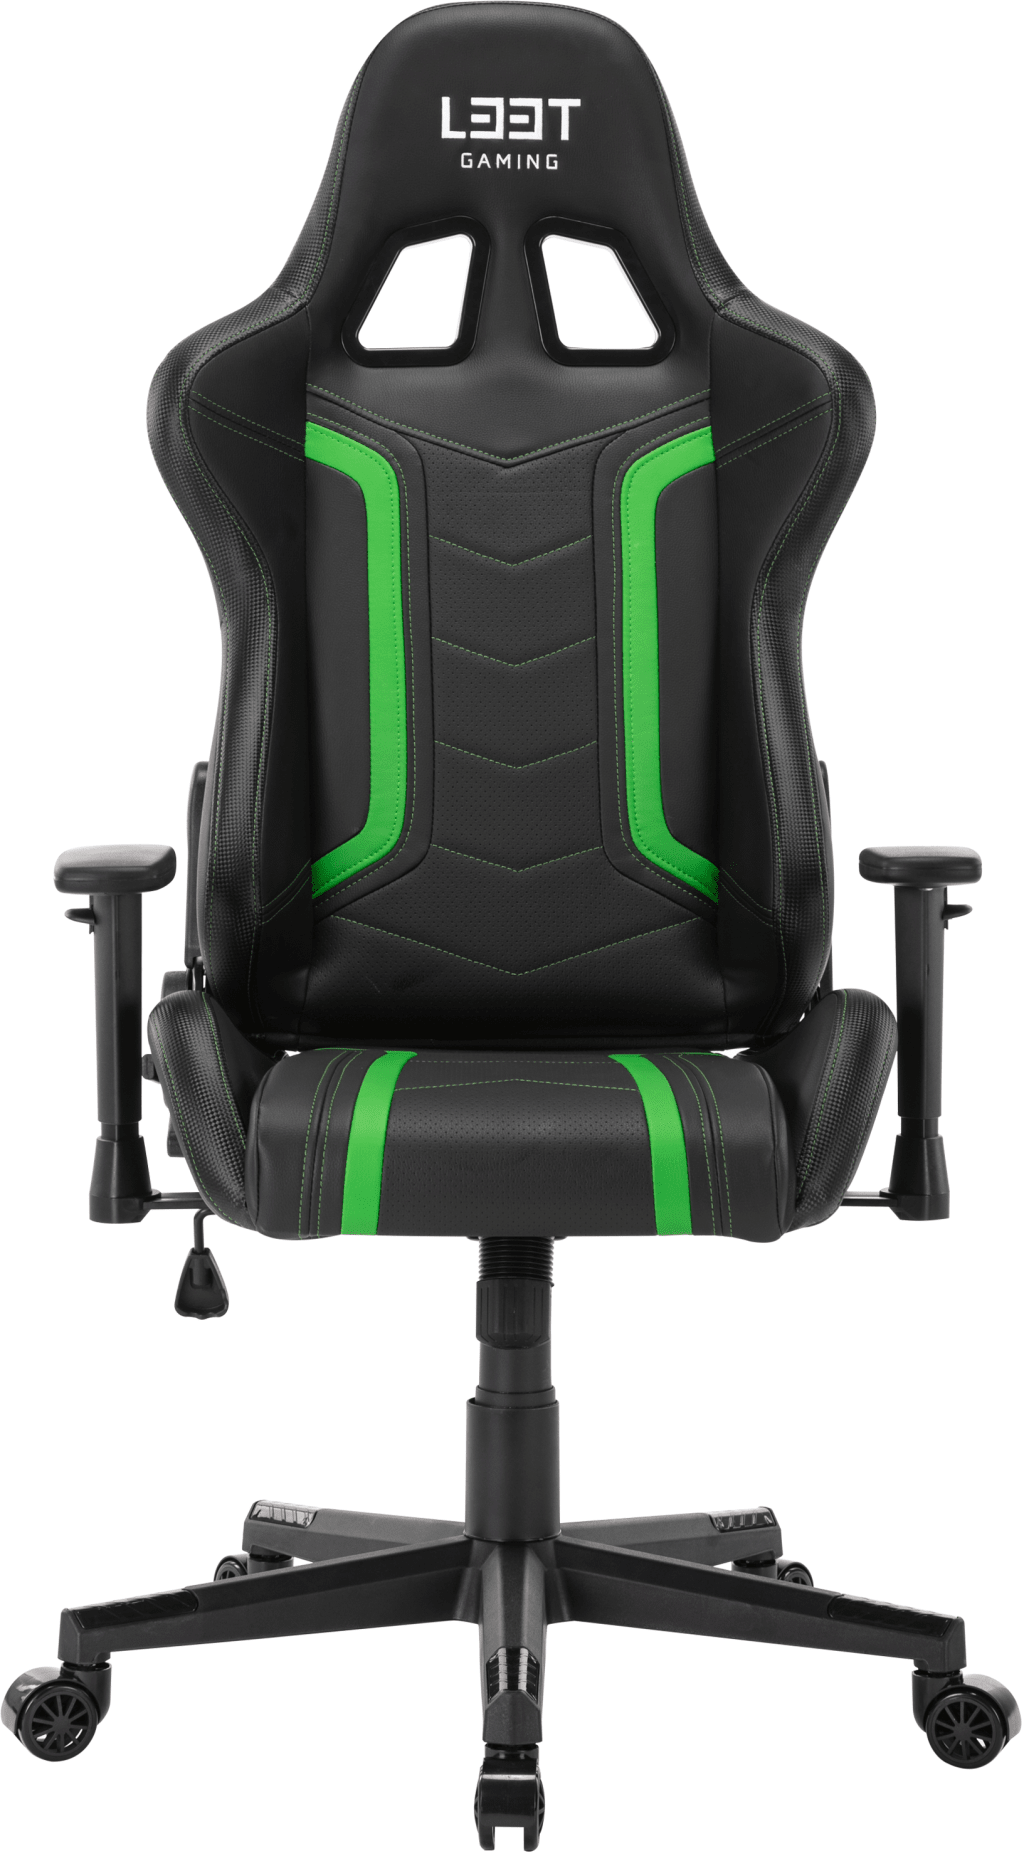  Bild på L33T Energy Gaming Chair - Black/Green gamingstol